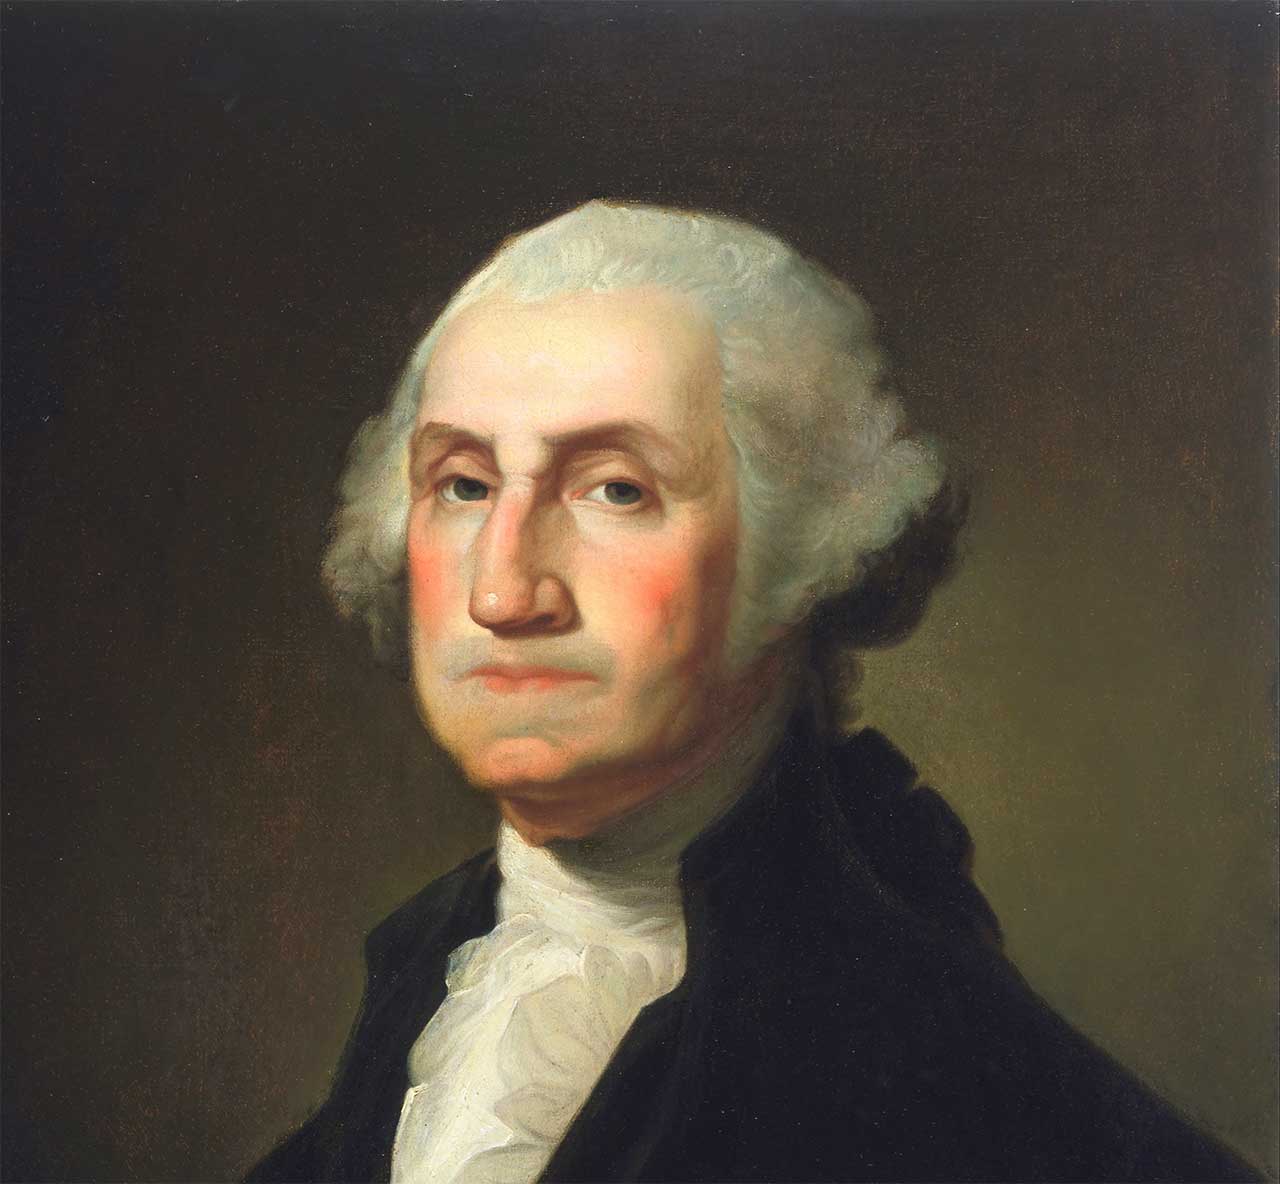 29の名言とエピソードで知る初代米国大統領ジョージ ワシントン 英語と和訳 名言倶楽部